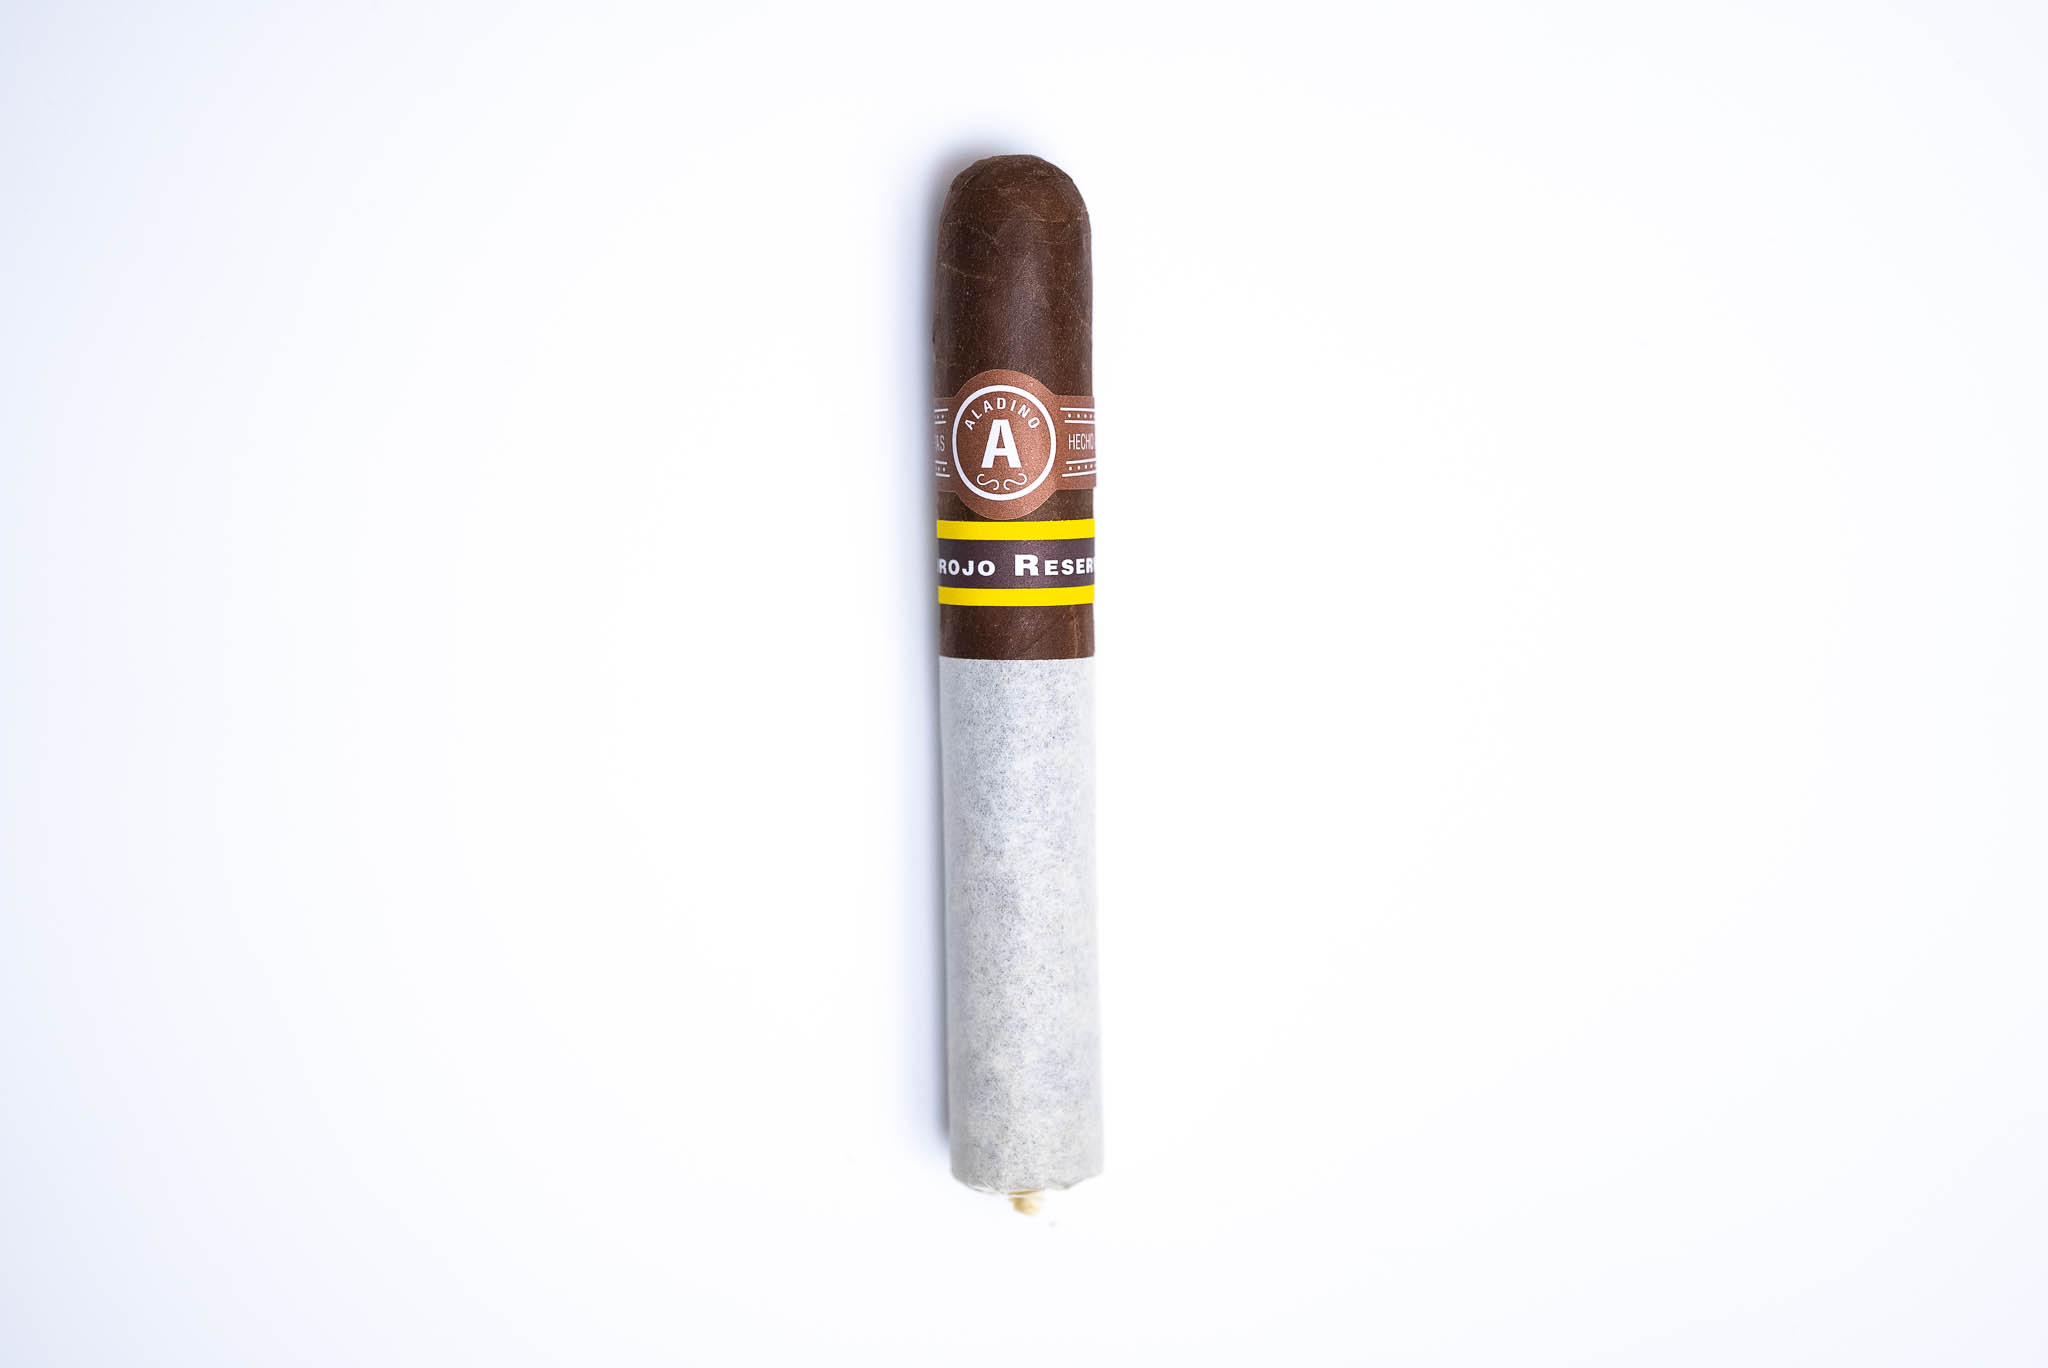 Aladino Corojo Reserva - Single cigar